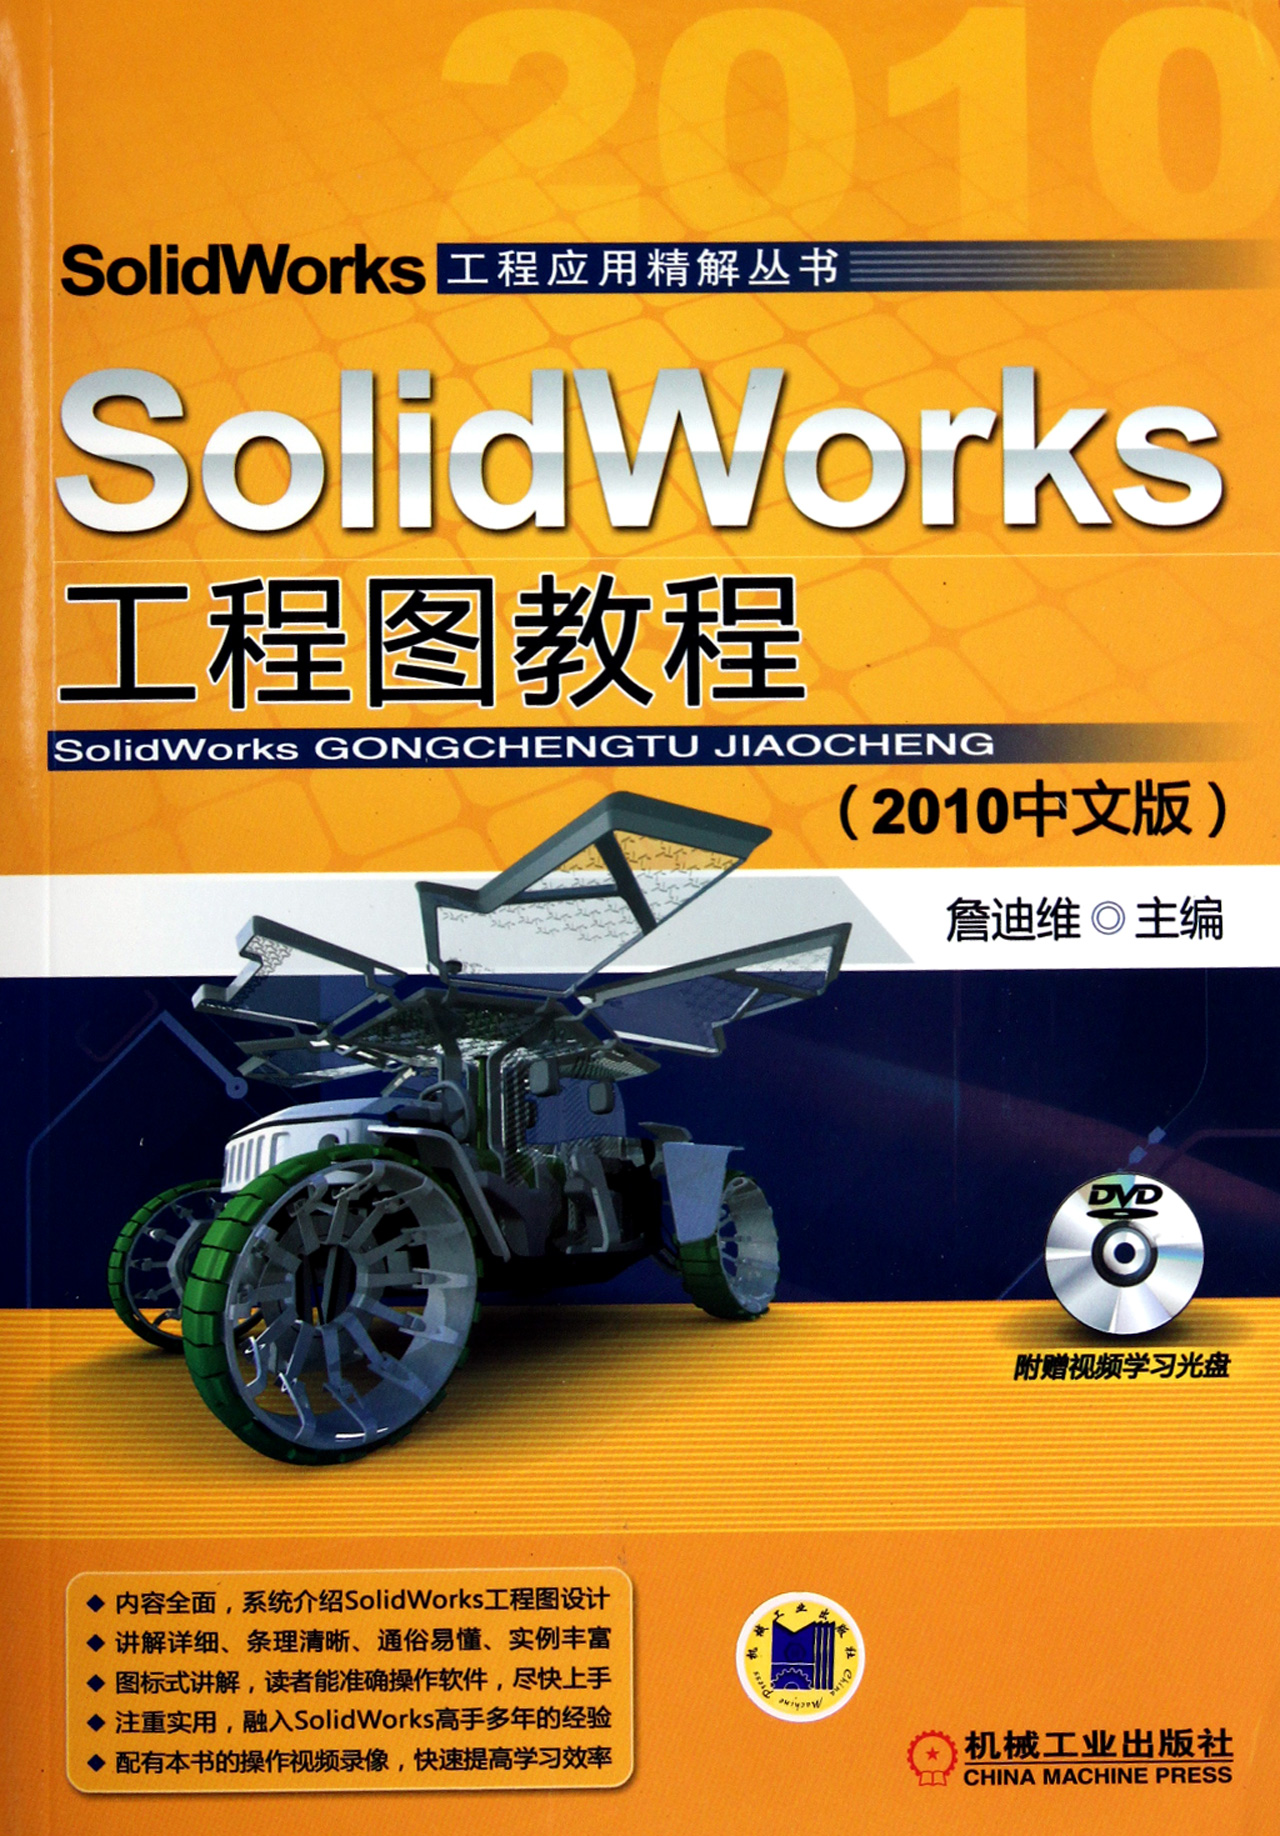 SolidWorks工程圖教程(機械工業出版社2010年11月版圖書)